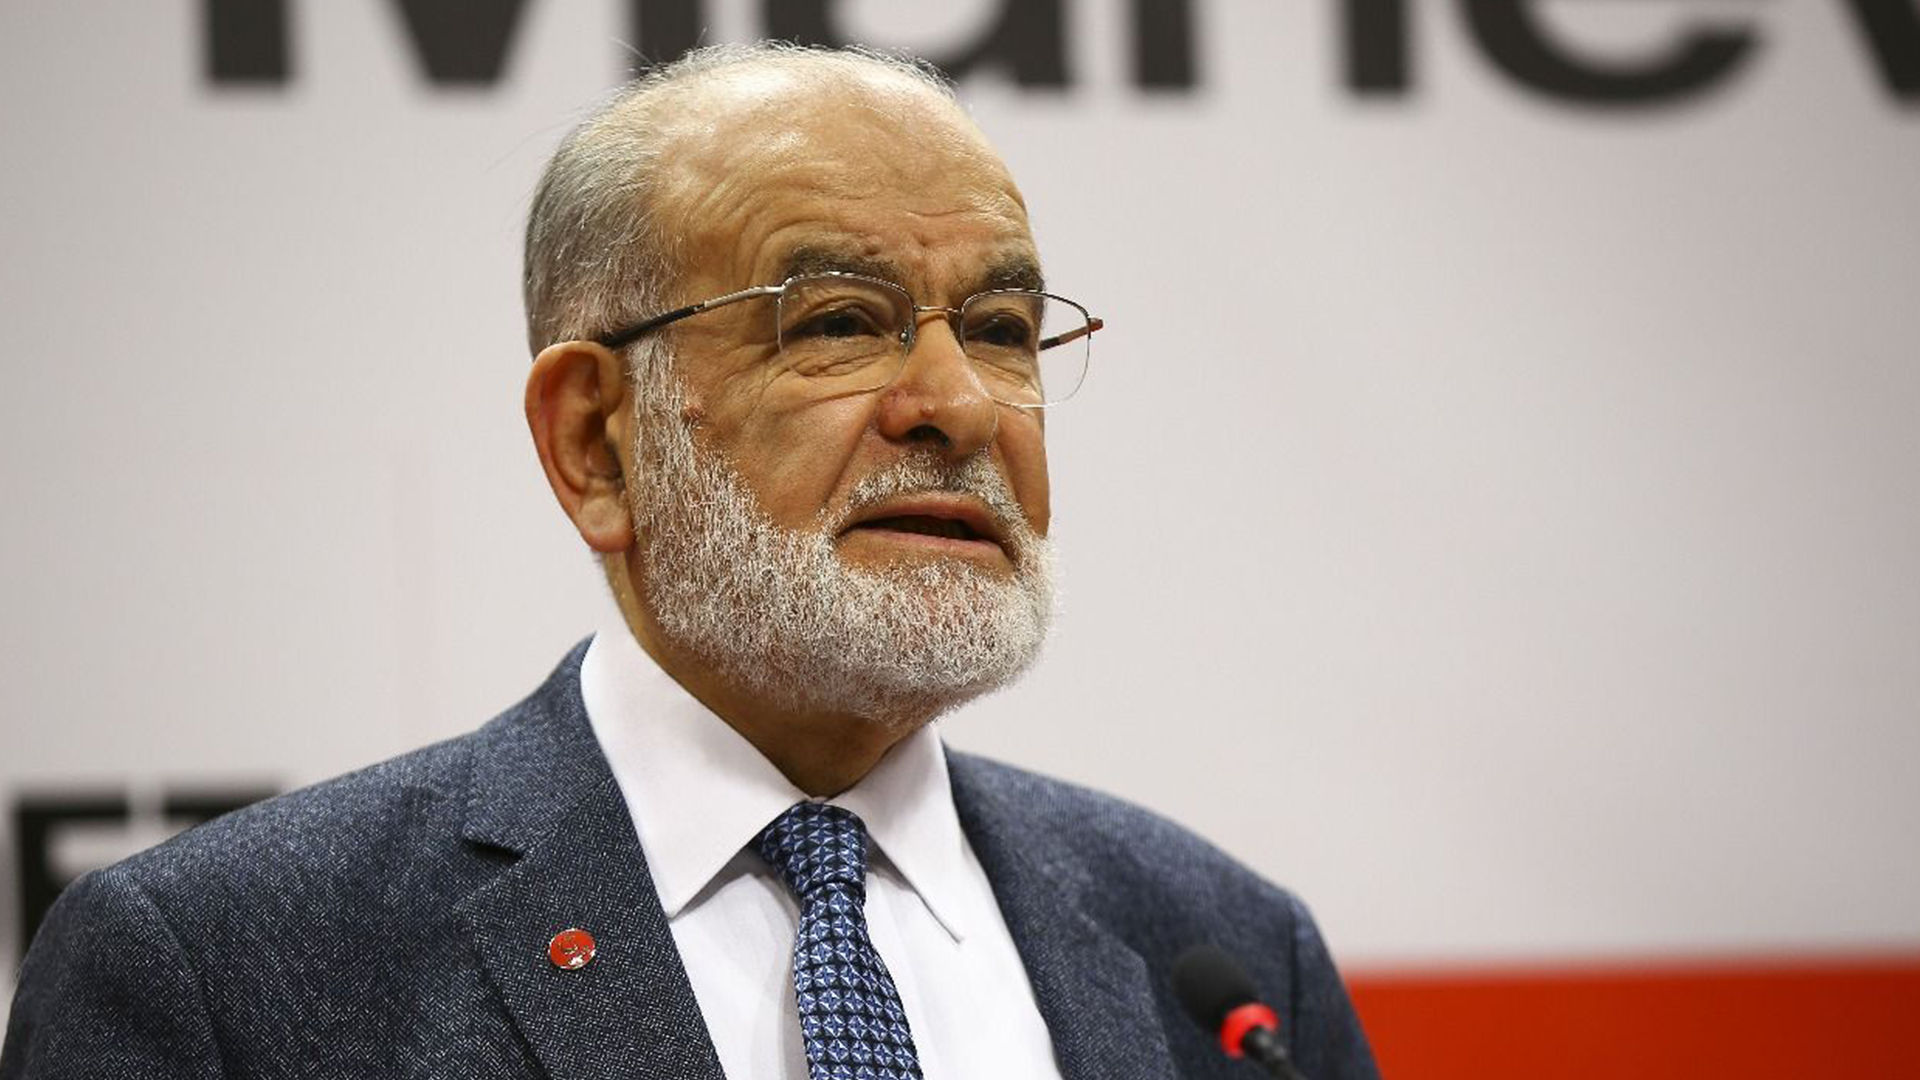 Covid-19 tedavisi gören Saadet Partisi Genel Başkanı Temel Karamollaoğlu taburcu edildi.